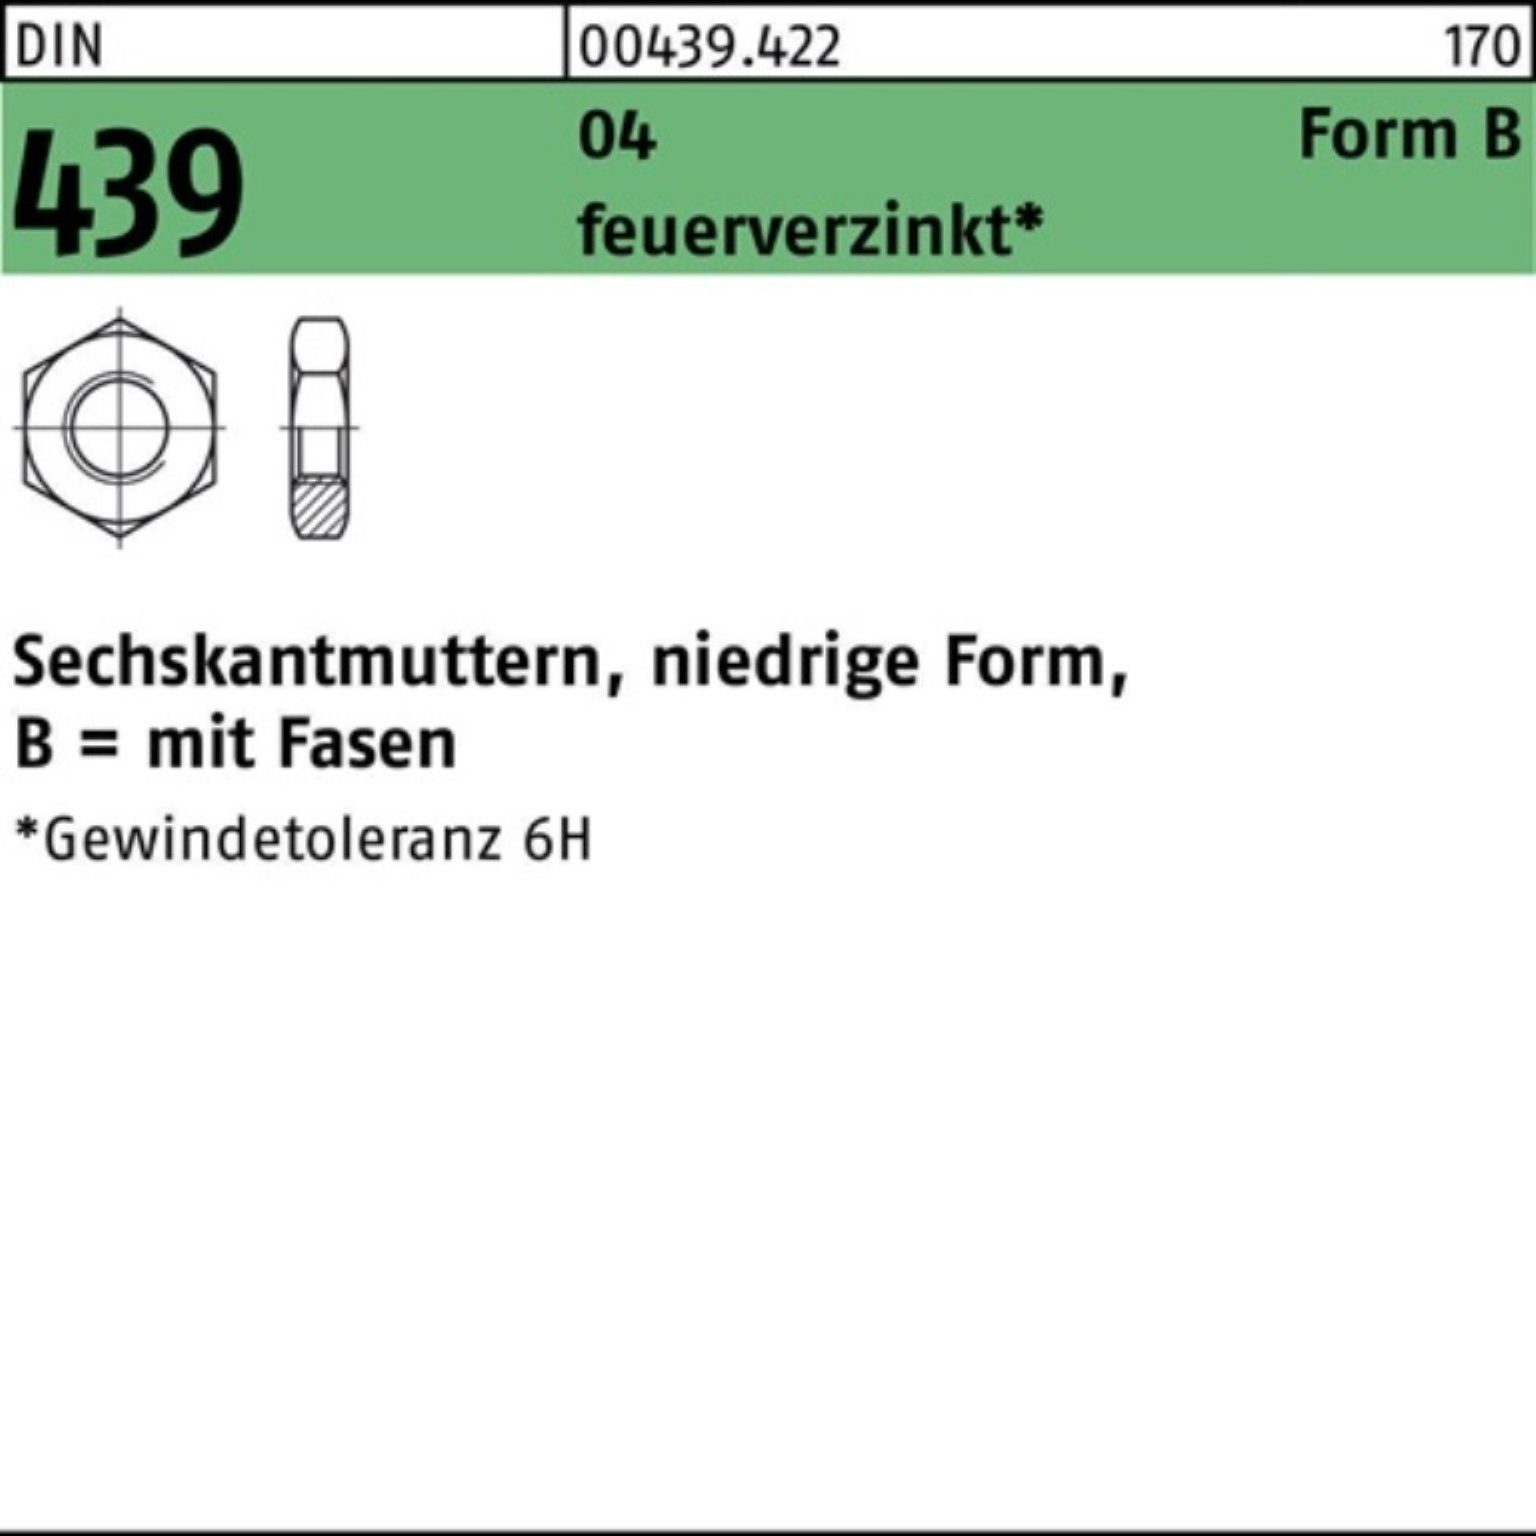 DIN 30 4035 BM Pack Automatenstahl 439/ISO 100er FormB Sechskantmutter Muttern Reyher